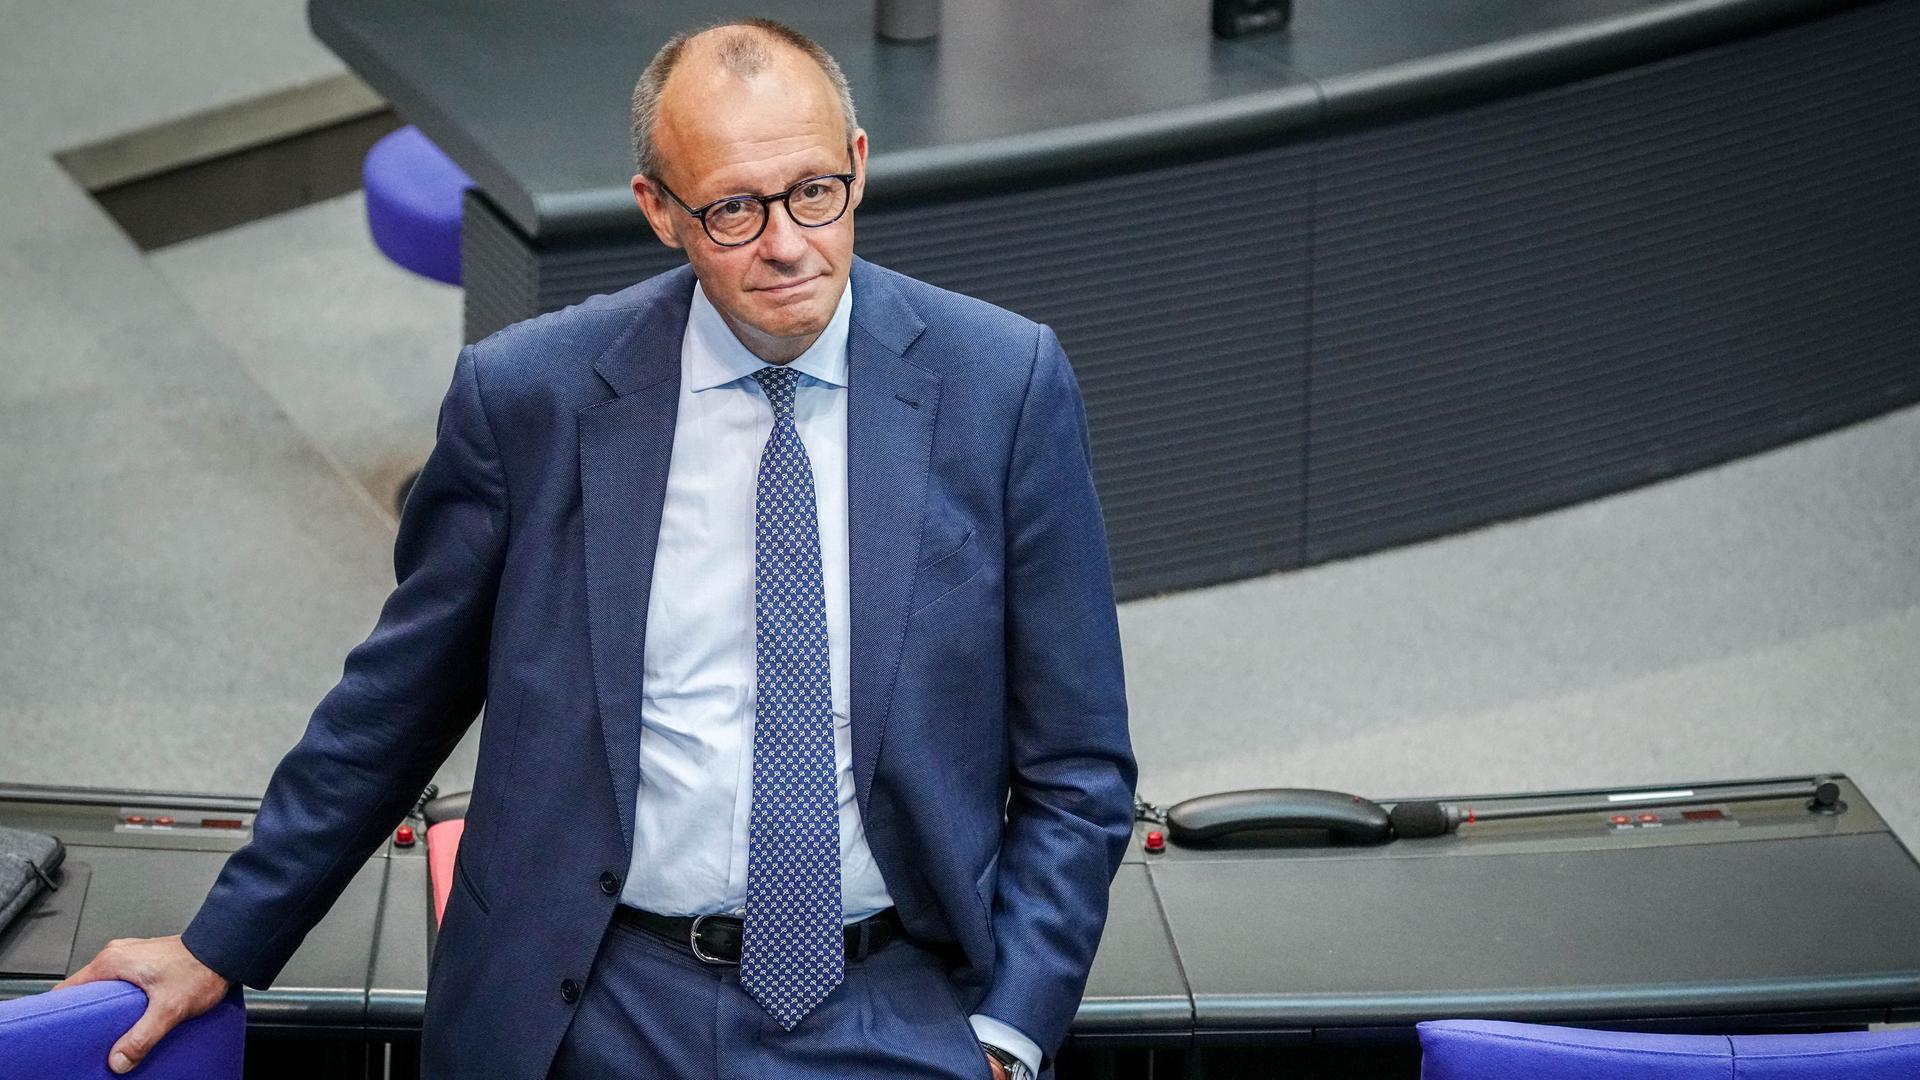 Umstrittene Äußerungen - CDU-Chef Merz erfährt Unterstützung aus den eigenen Reihen